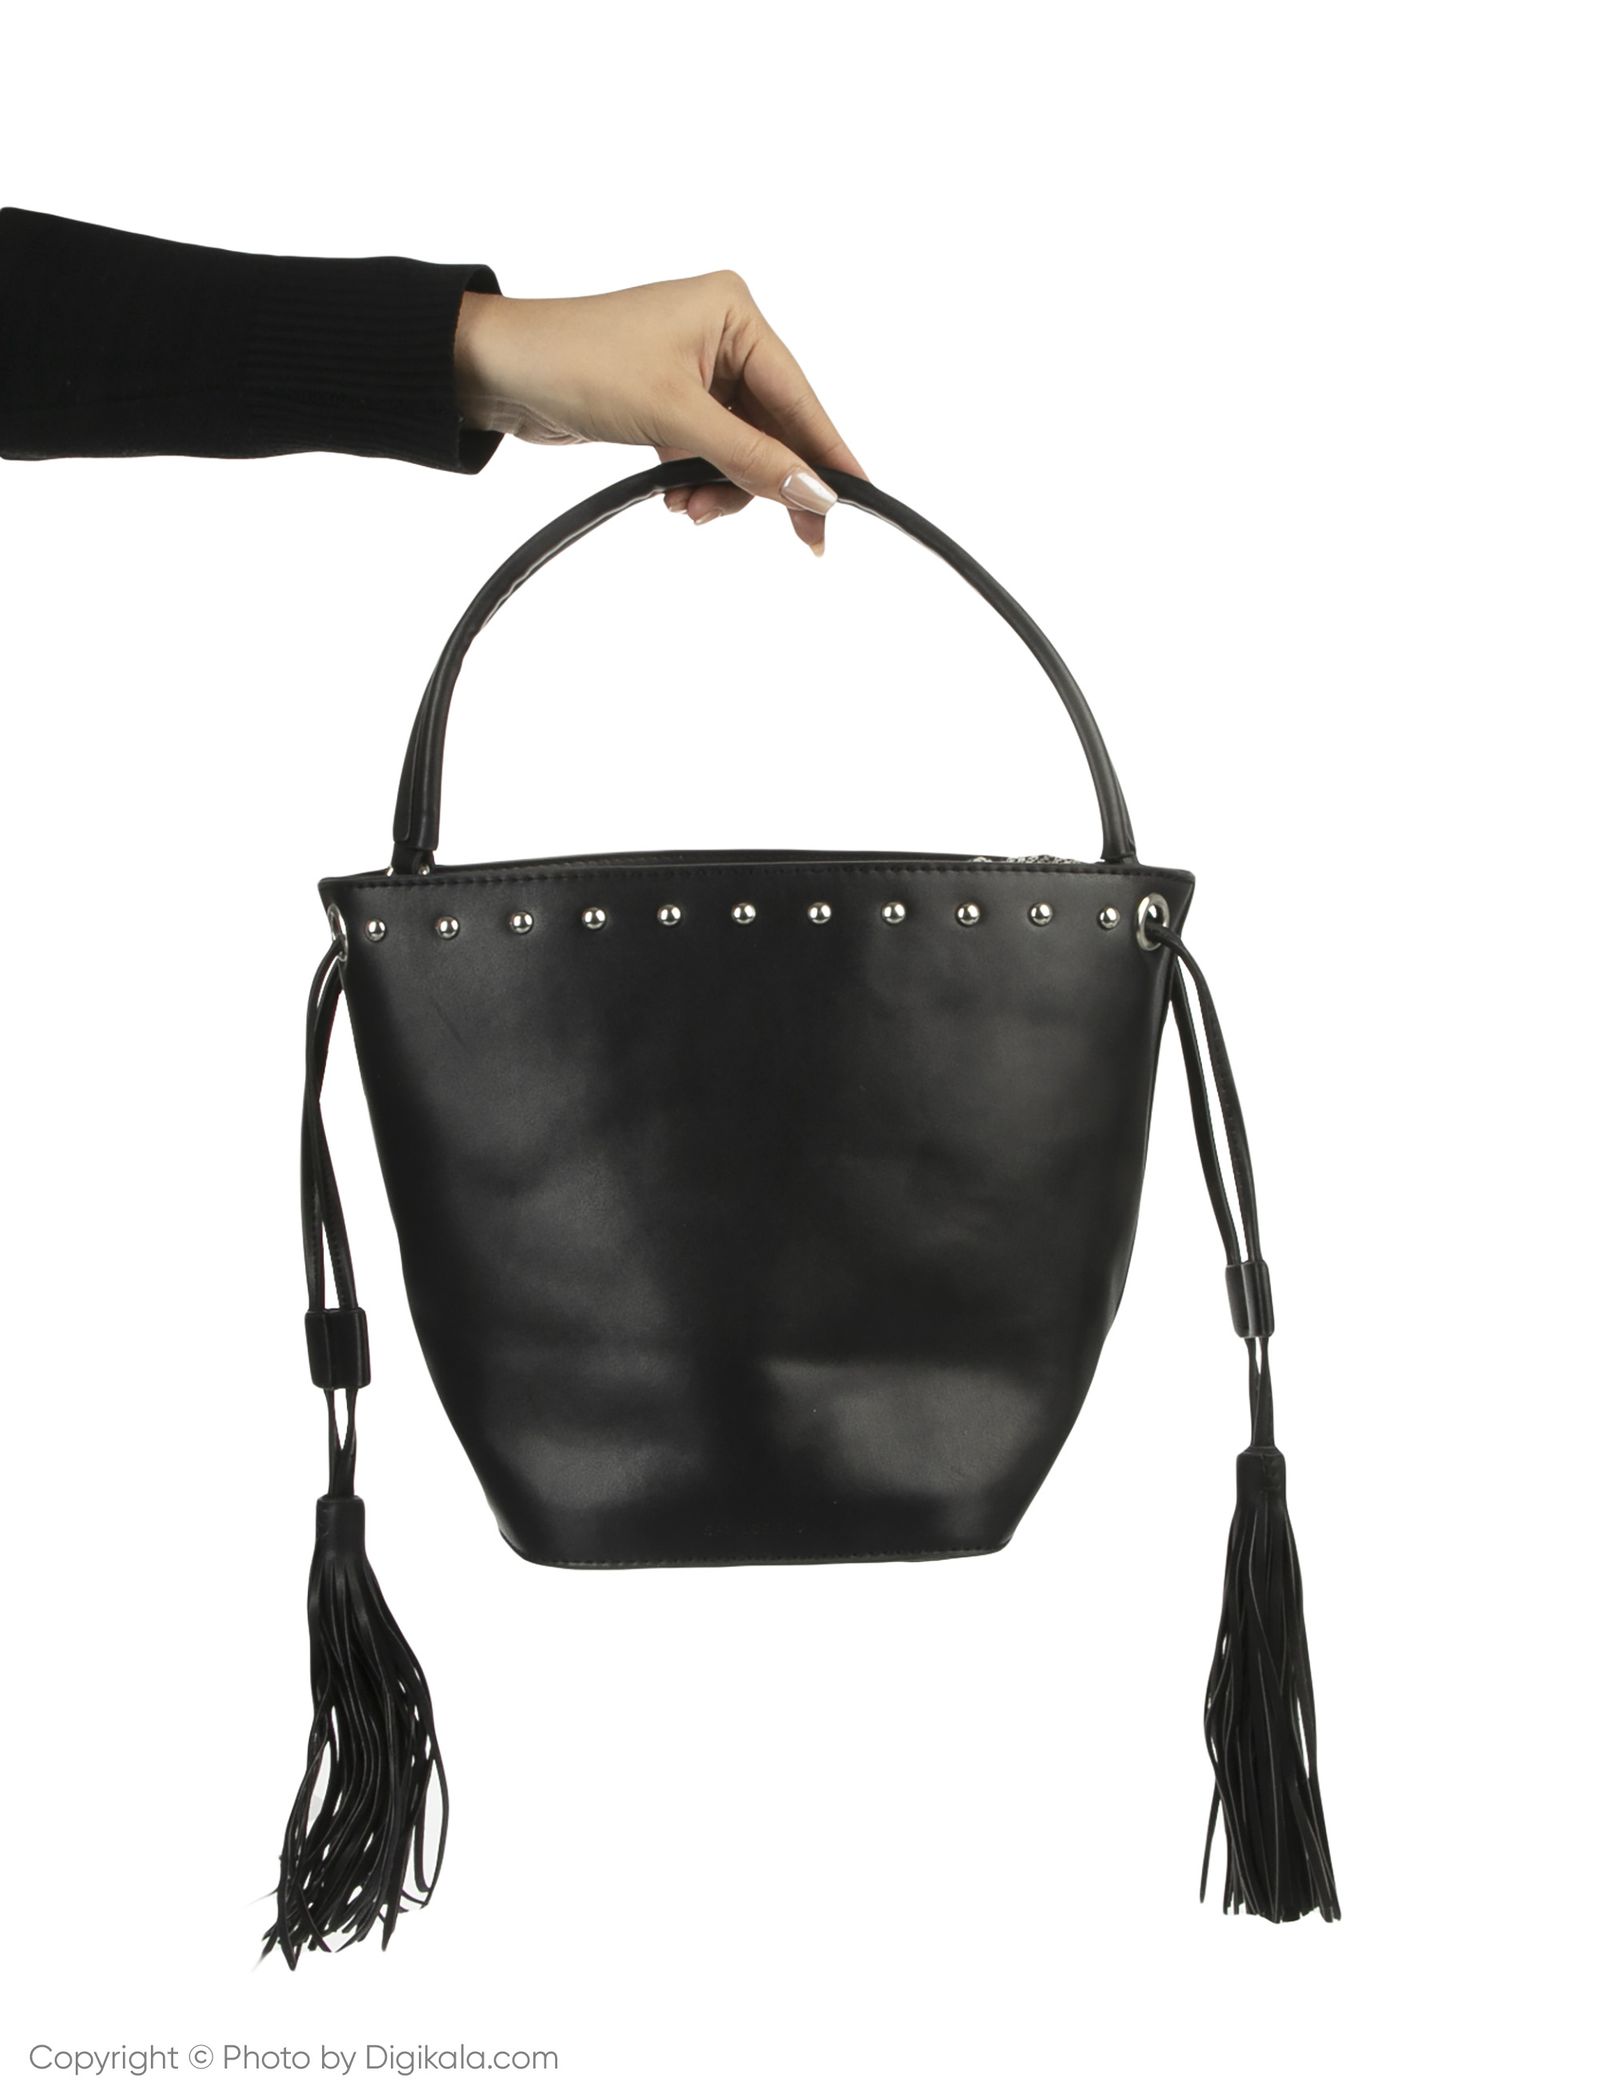 کیف دستی زنانه اسپرینگ فیلد مدل 8522103-BLACK - مشکی - 6